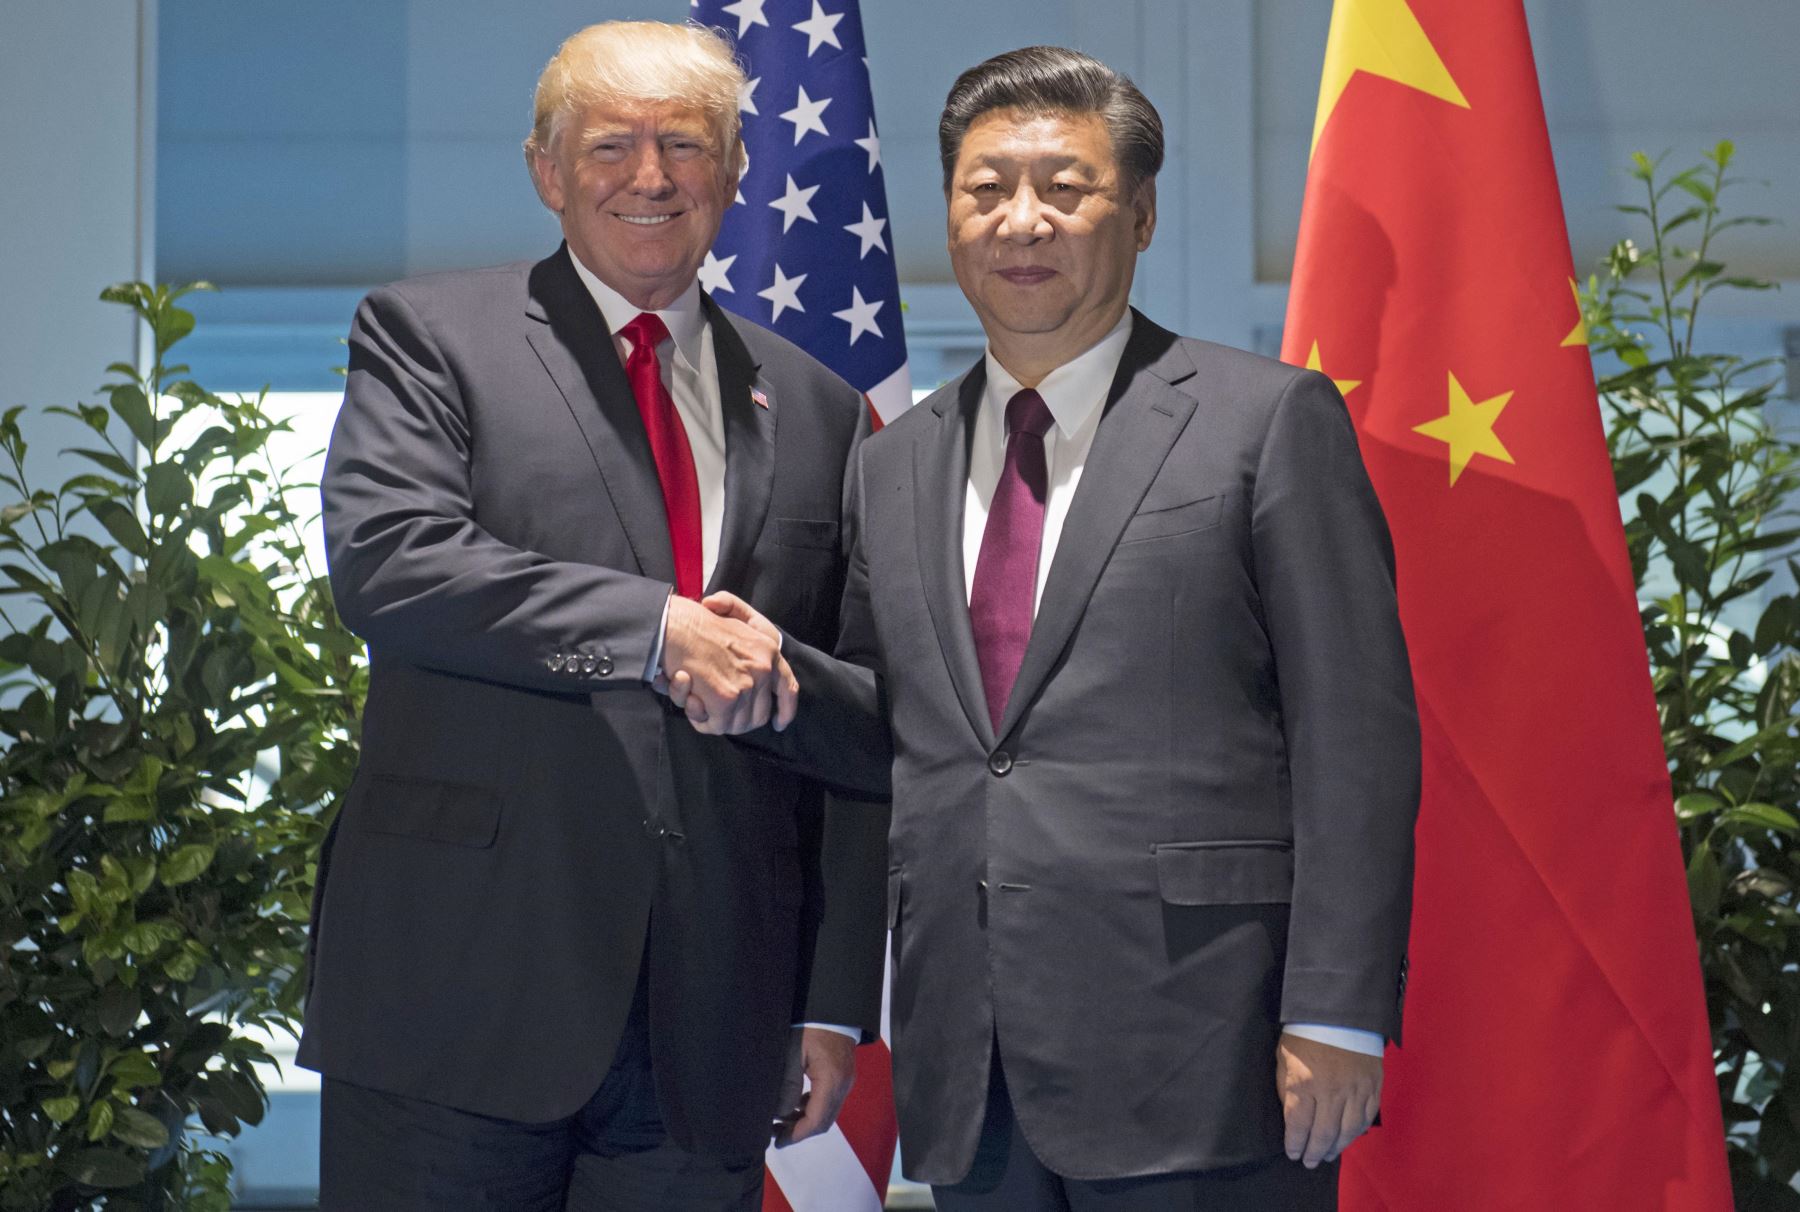 El presidente estadounidense Donald Trump y su homólogo chino Xi Jinping. Foto: AFP